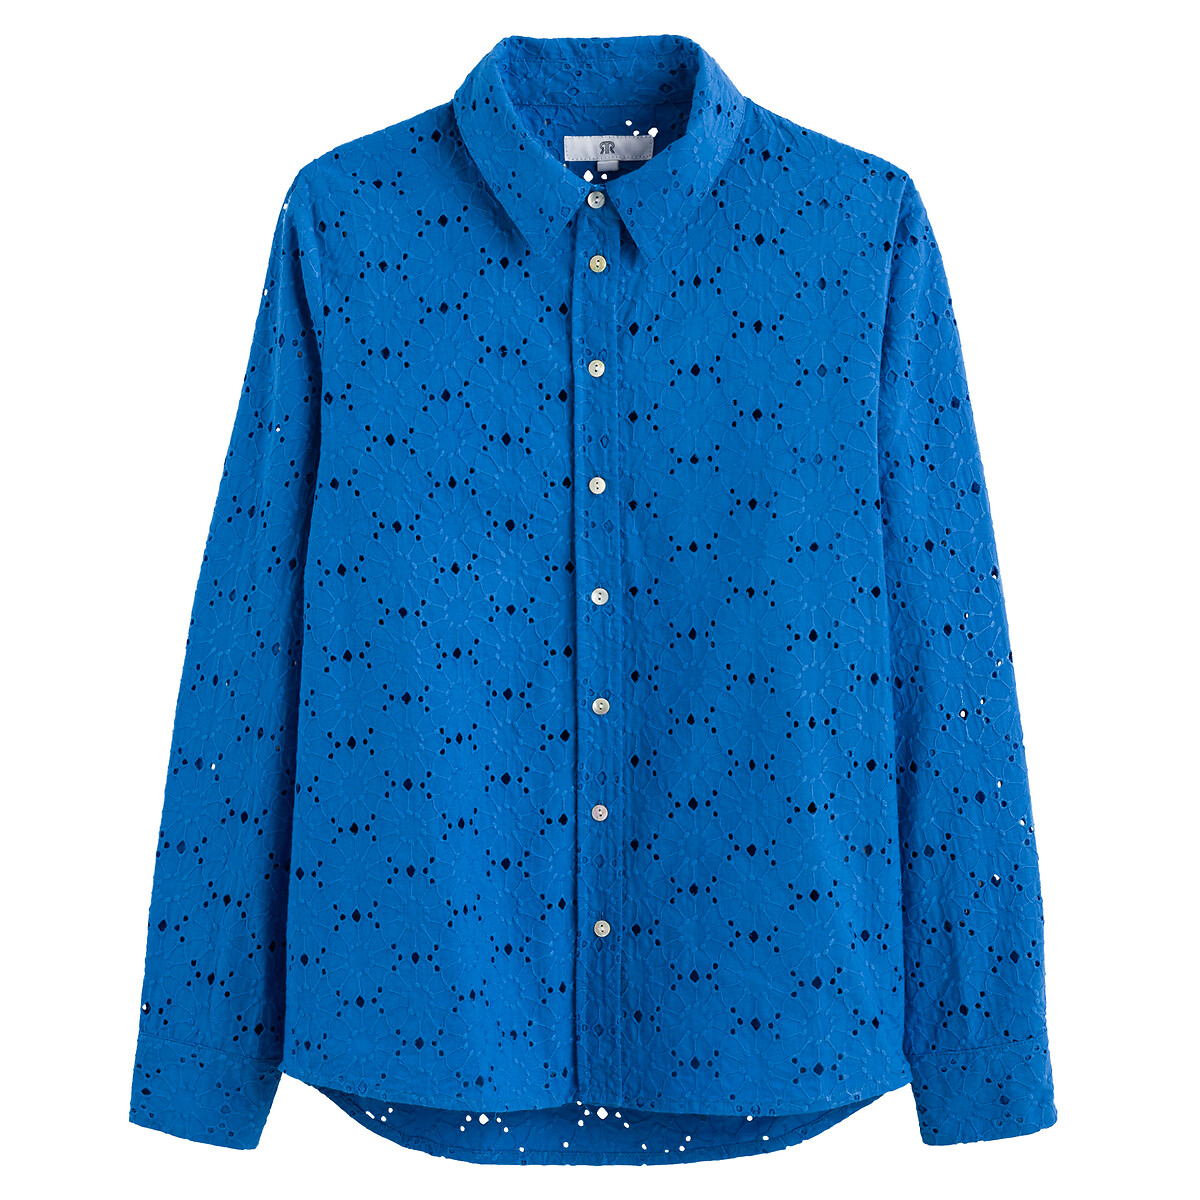 Рубашка С длинными рукавами из английской вышивк 34 (FR) - 40 (RUS) синий LaRedoute, размер 34 (FR) - 40 (RUS) Рубашка С длинными рукавами из английской вышивк 34 (FR) - 40 (RUS) синий - фото 5